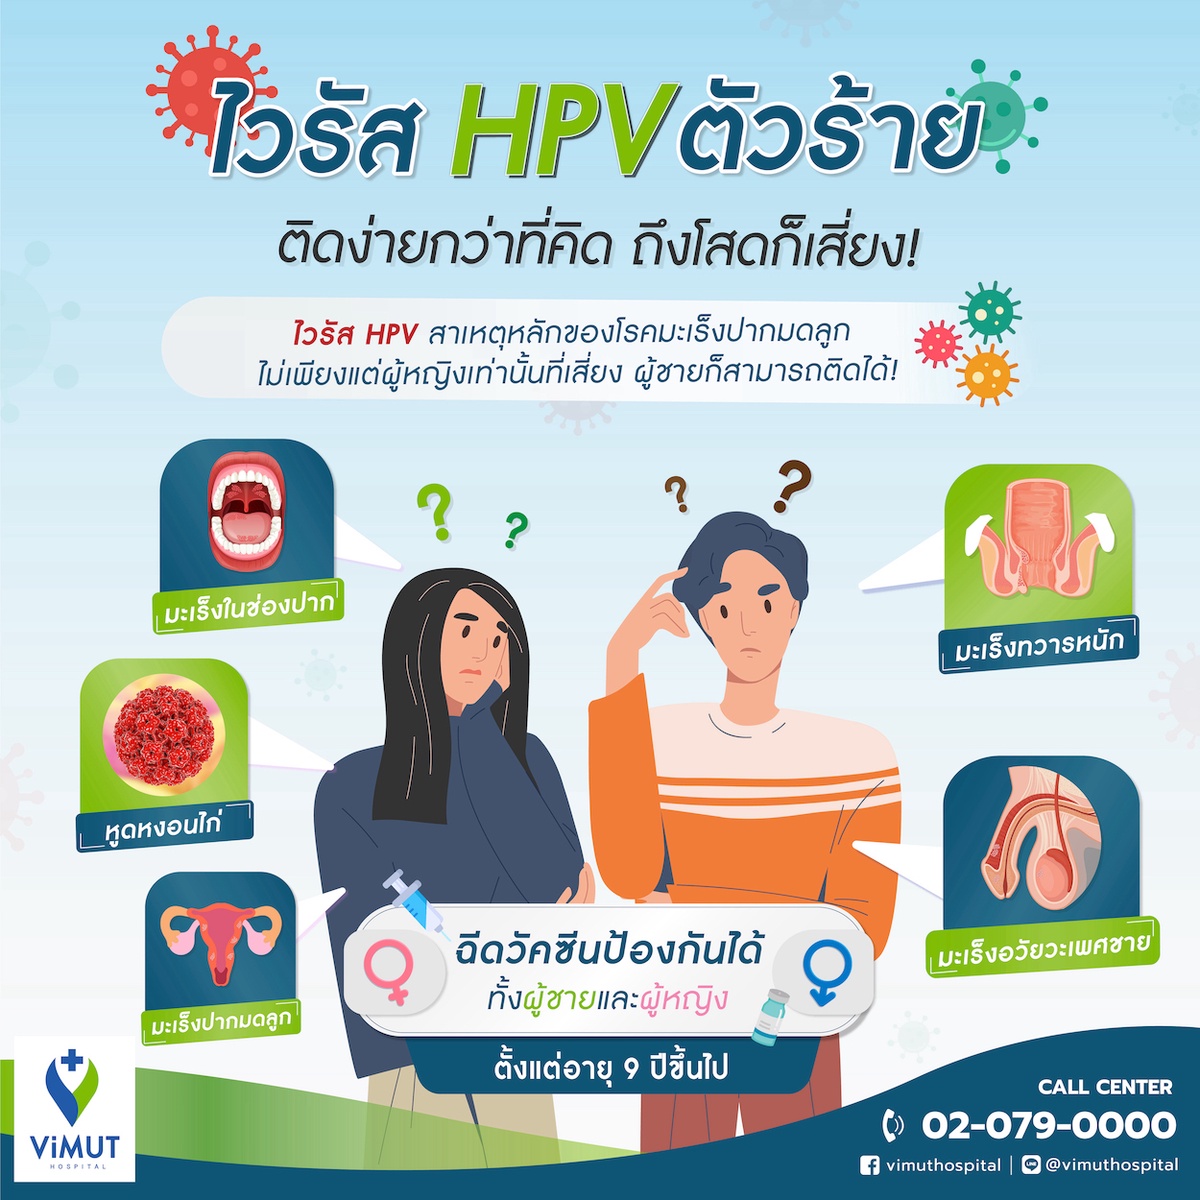 แพทย์รพ.วิมุต เผยไวรัส HPV ตัวร้าย ติดง่ายกว่าที่คิด ถึงโสดก็เสี่ยง!